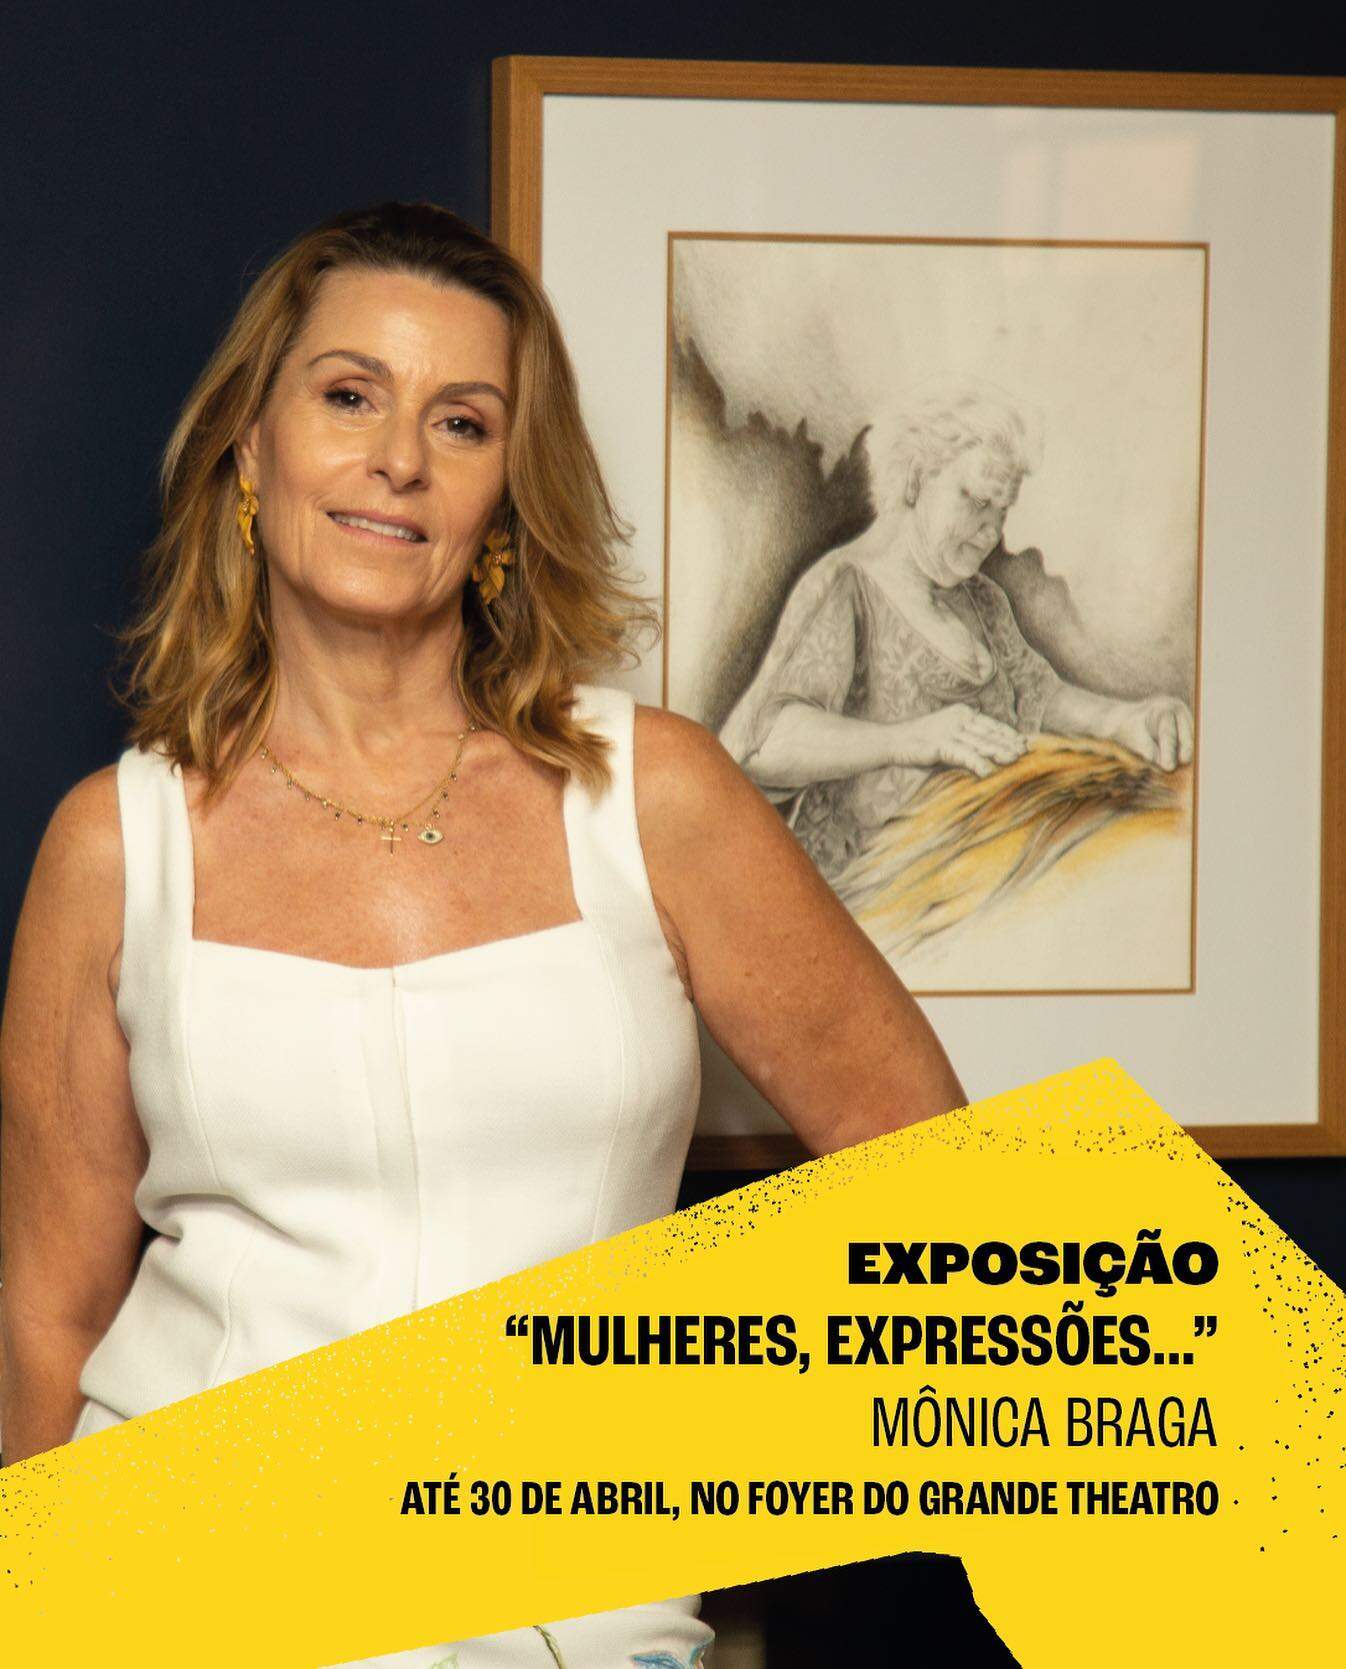 Exposição: “Mulheres, expressões…” da artista Mônica Braga